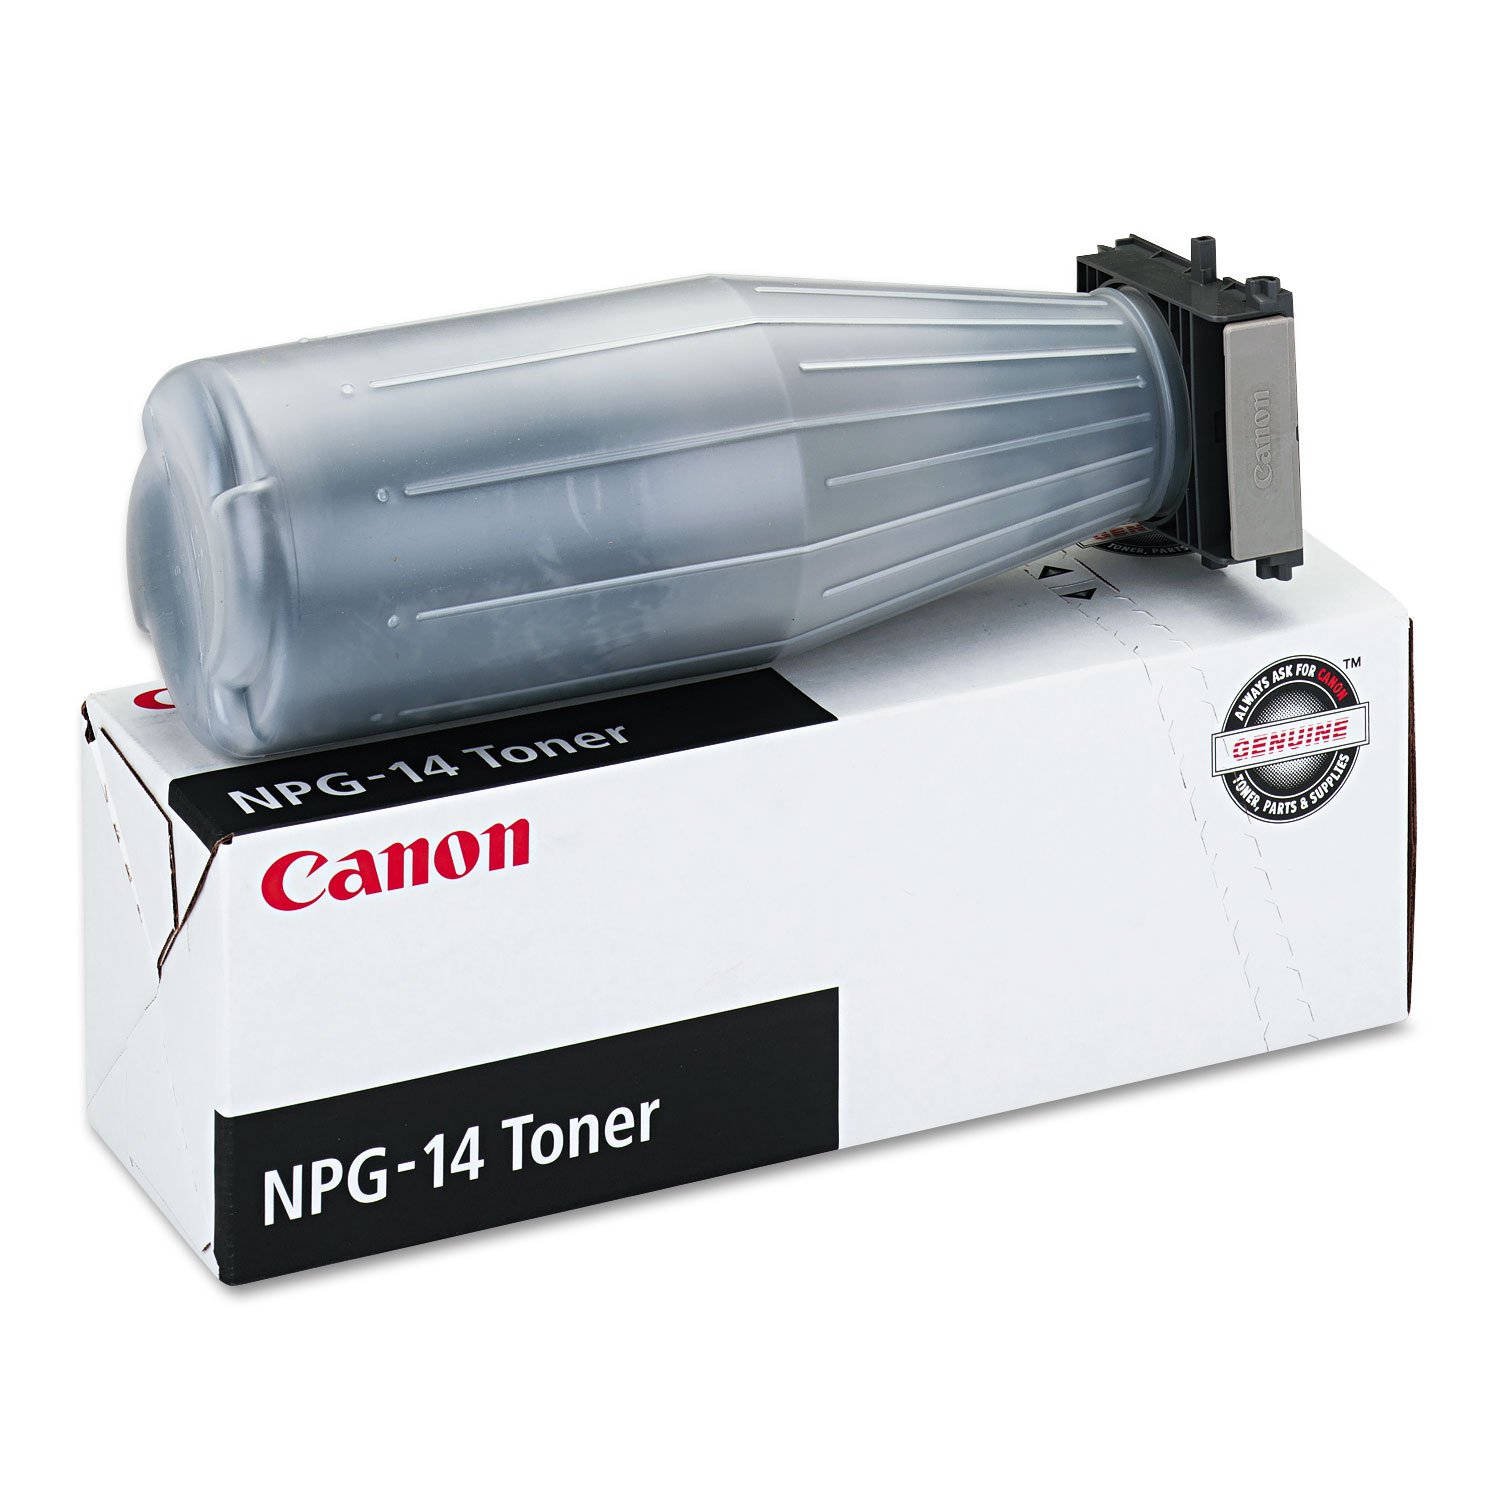 Np G14 Copier Cartridge Canon Supplies Lfp 1385a001 30275400038